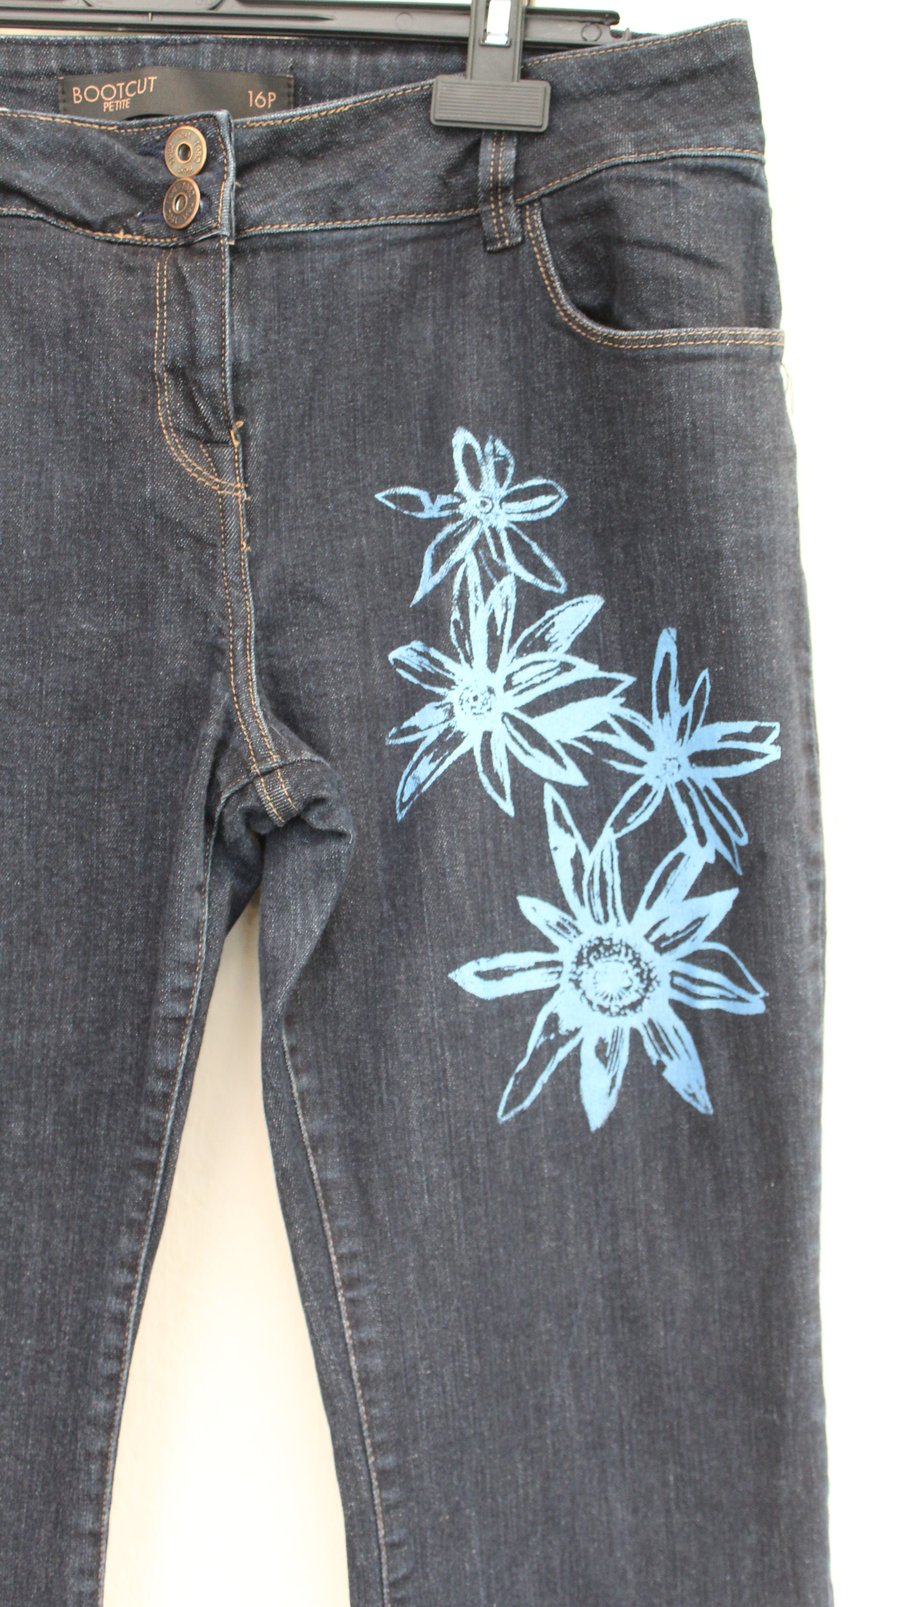  size 16,petite, Jeans, Eco reworked Next jeans,blue flower screen print unique